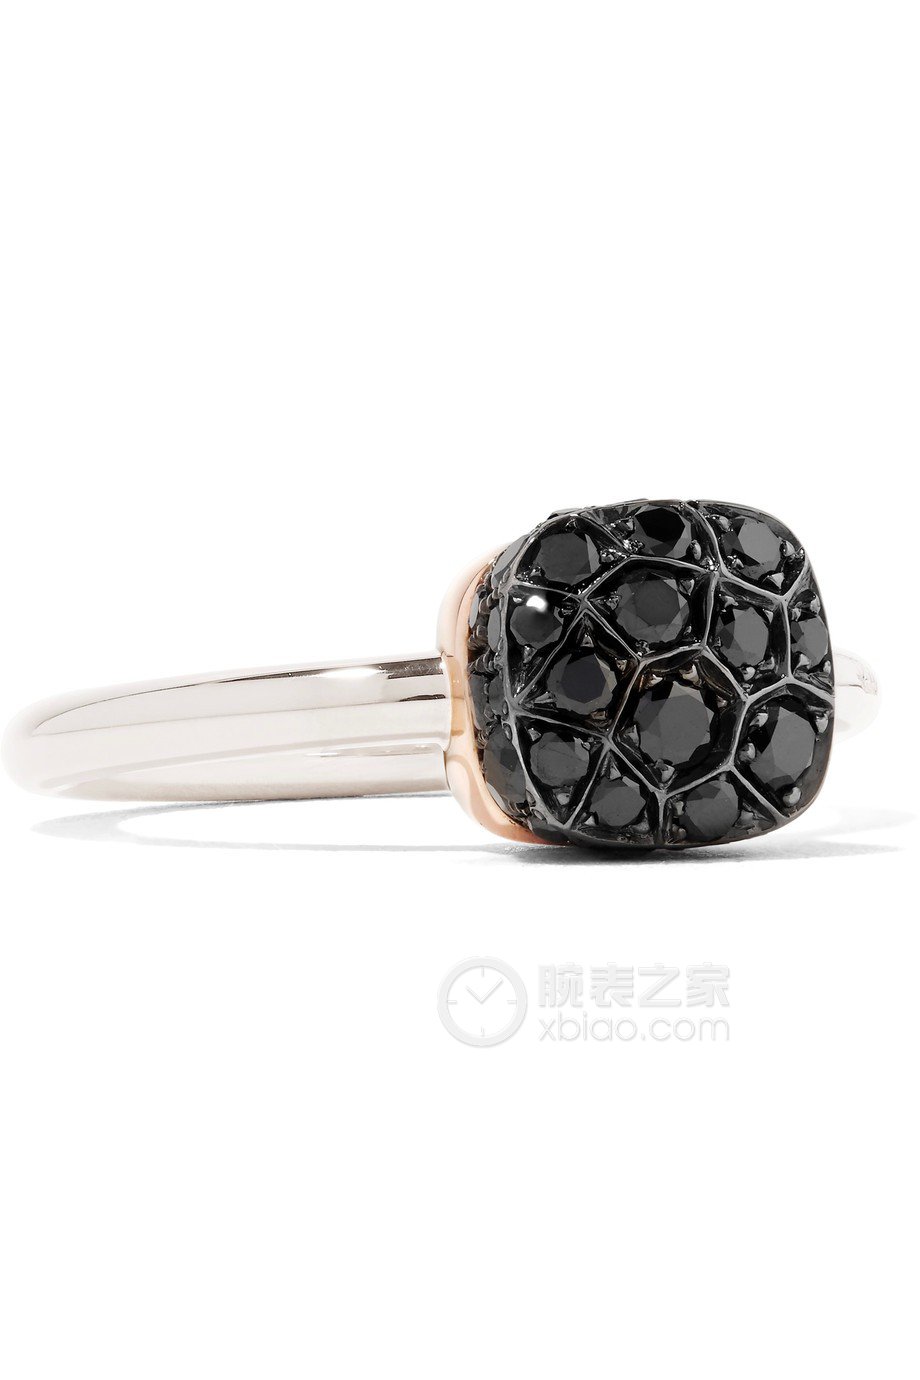 宝曼兰朵NUDO系列A.B501/O6/BB戒指